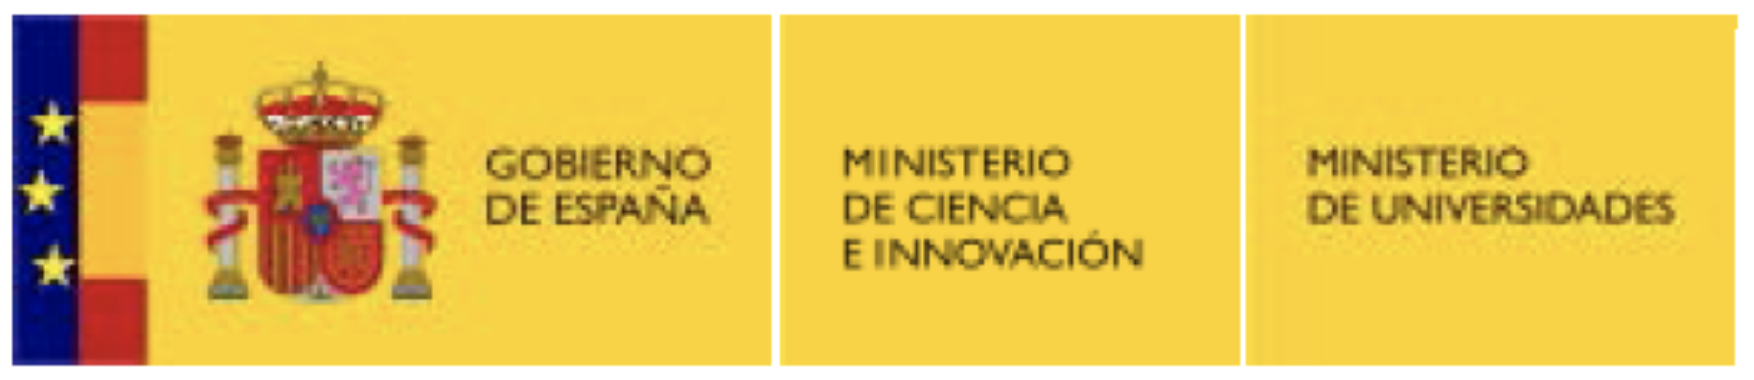 Ministerio de ciencia e innovación